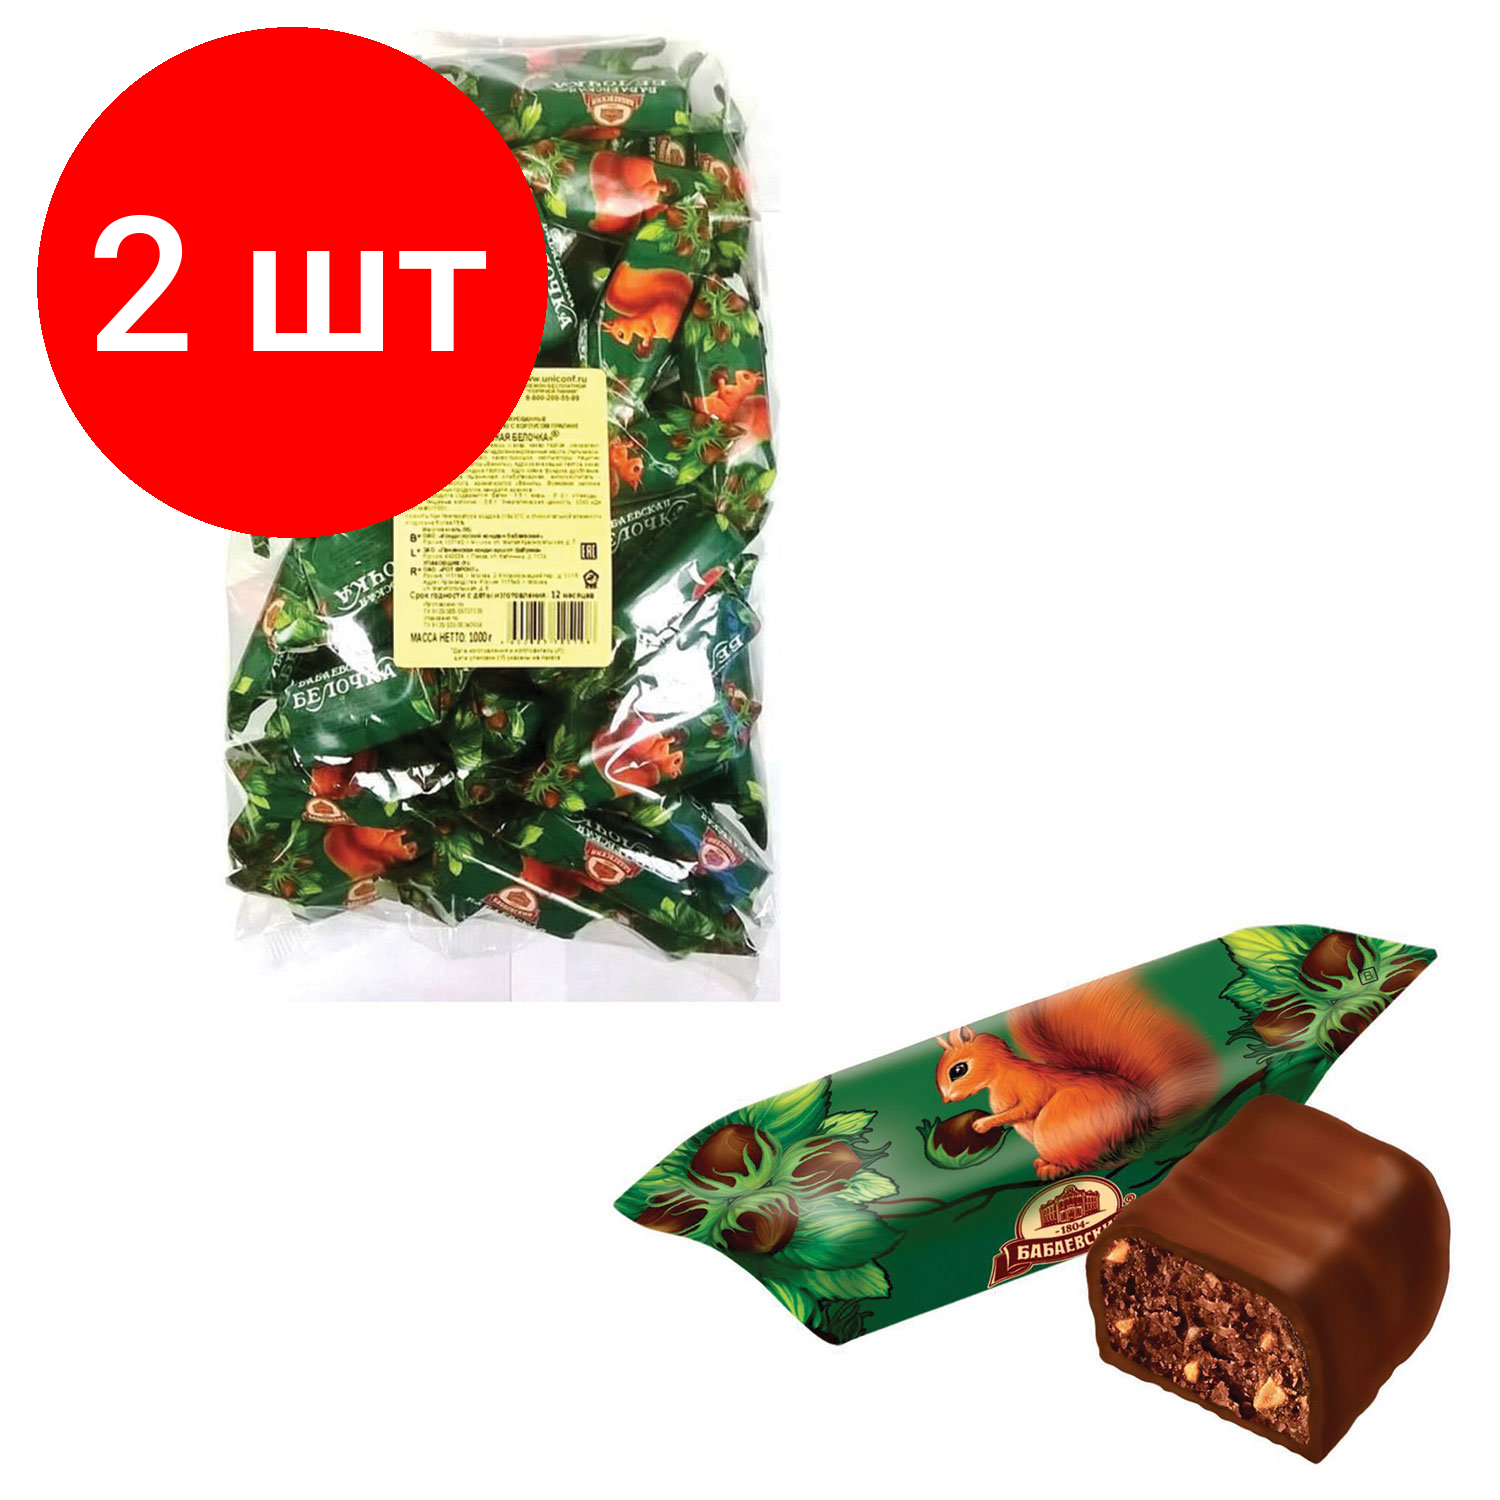 Комплект 2 шт, Конфеты шоколадные бабаевский "Белочка", 1000 г, пакет, ББ11385